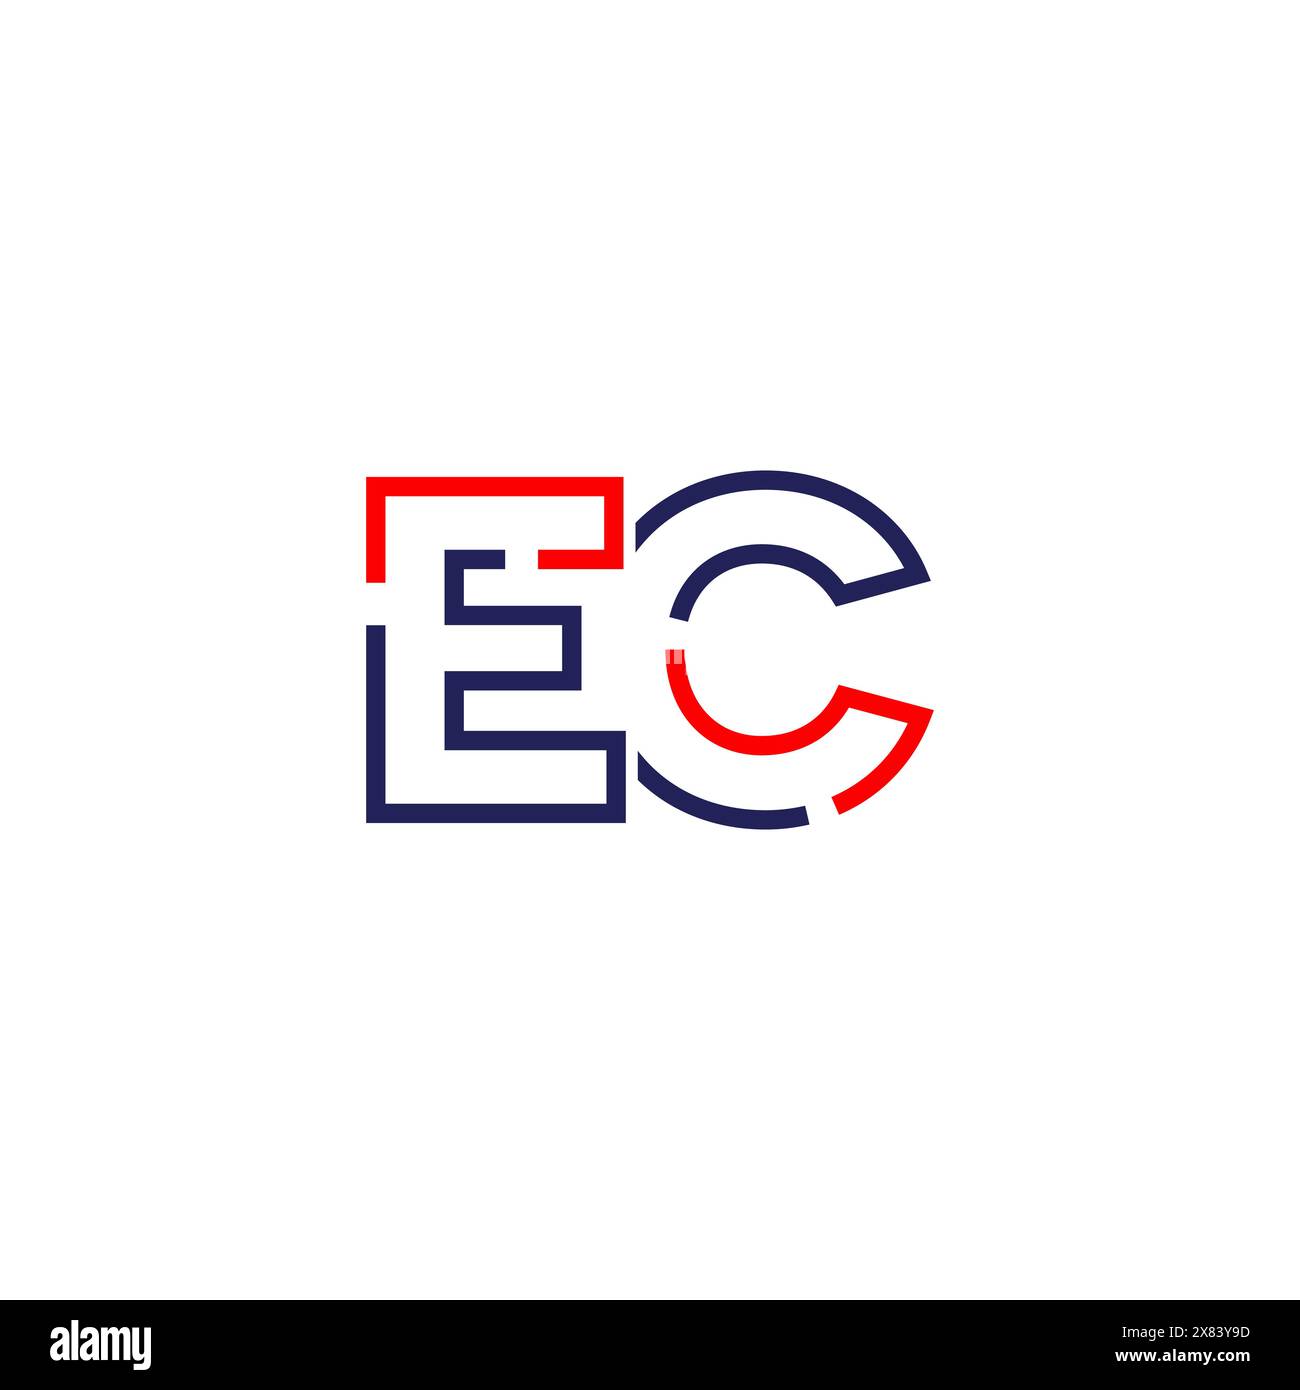 Design des EC TECH Logos Stock Vektor